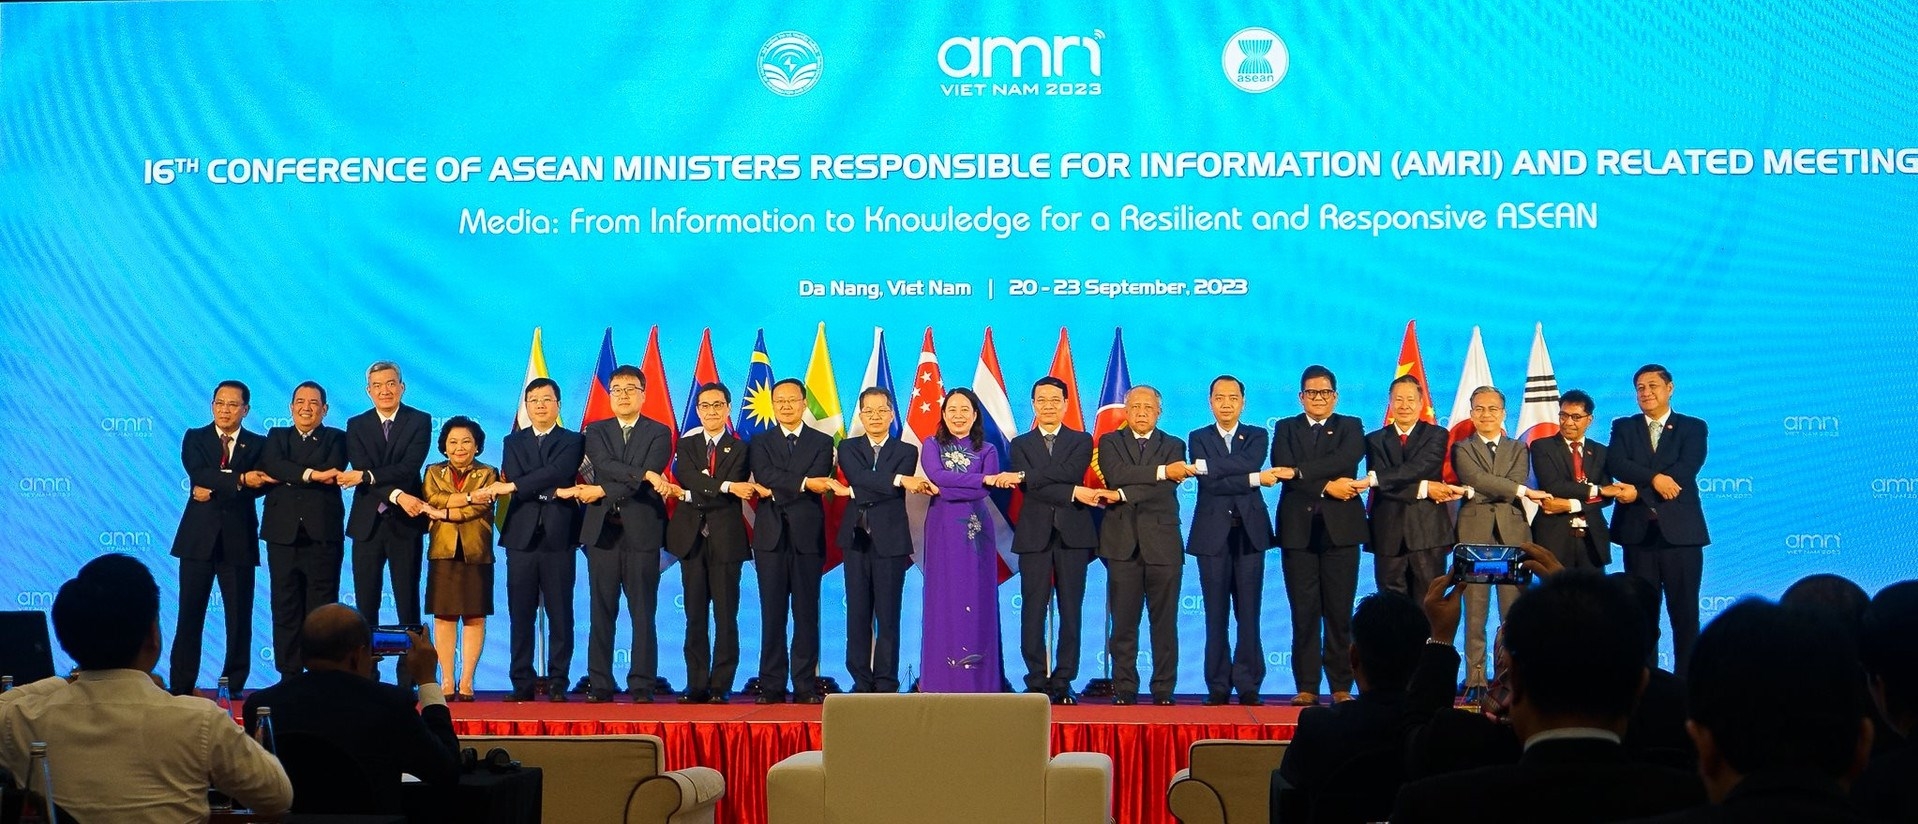 Khai mạc Hội nghị Bộ trưởng Thông tin ASEAN (AMRI) lần thứ 16 tại Đà Nẵng